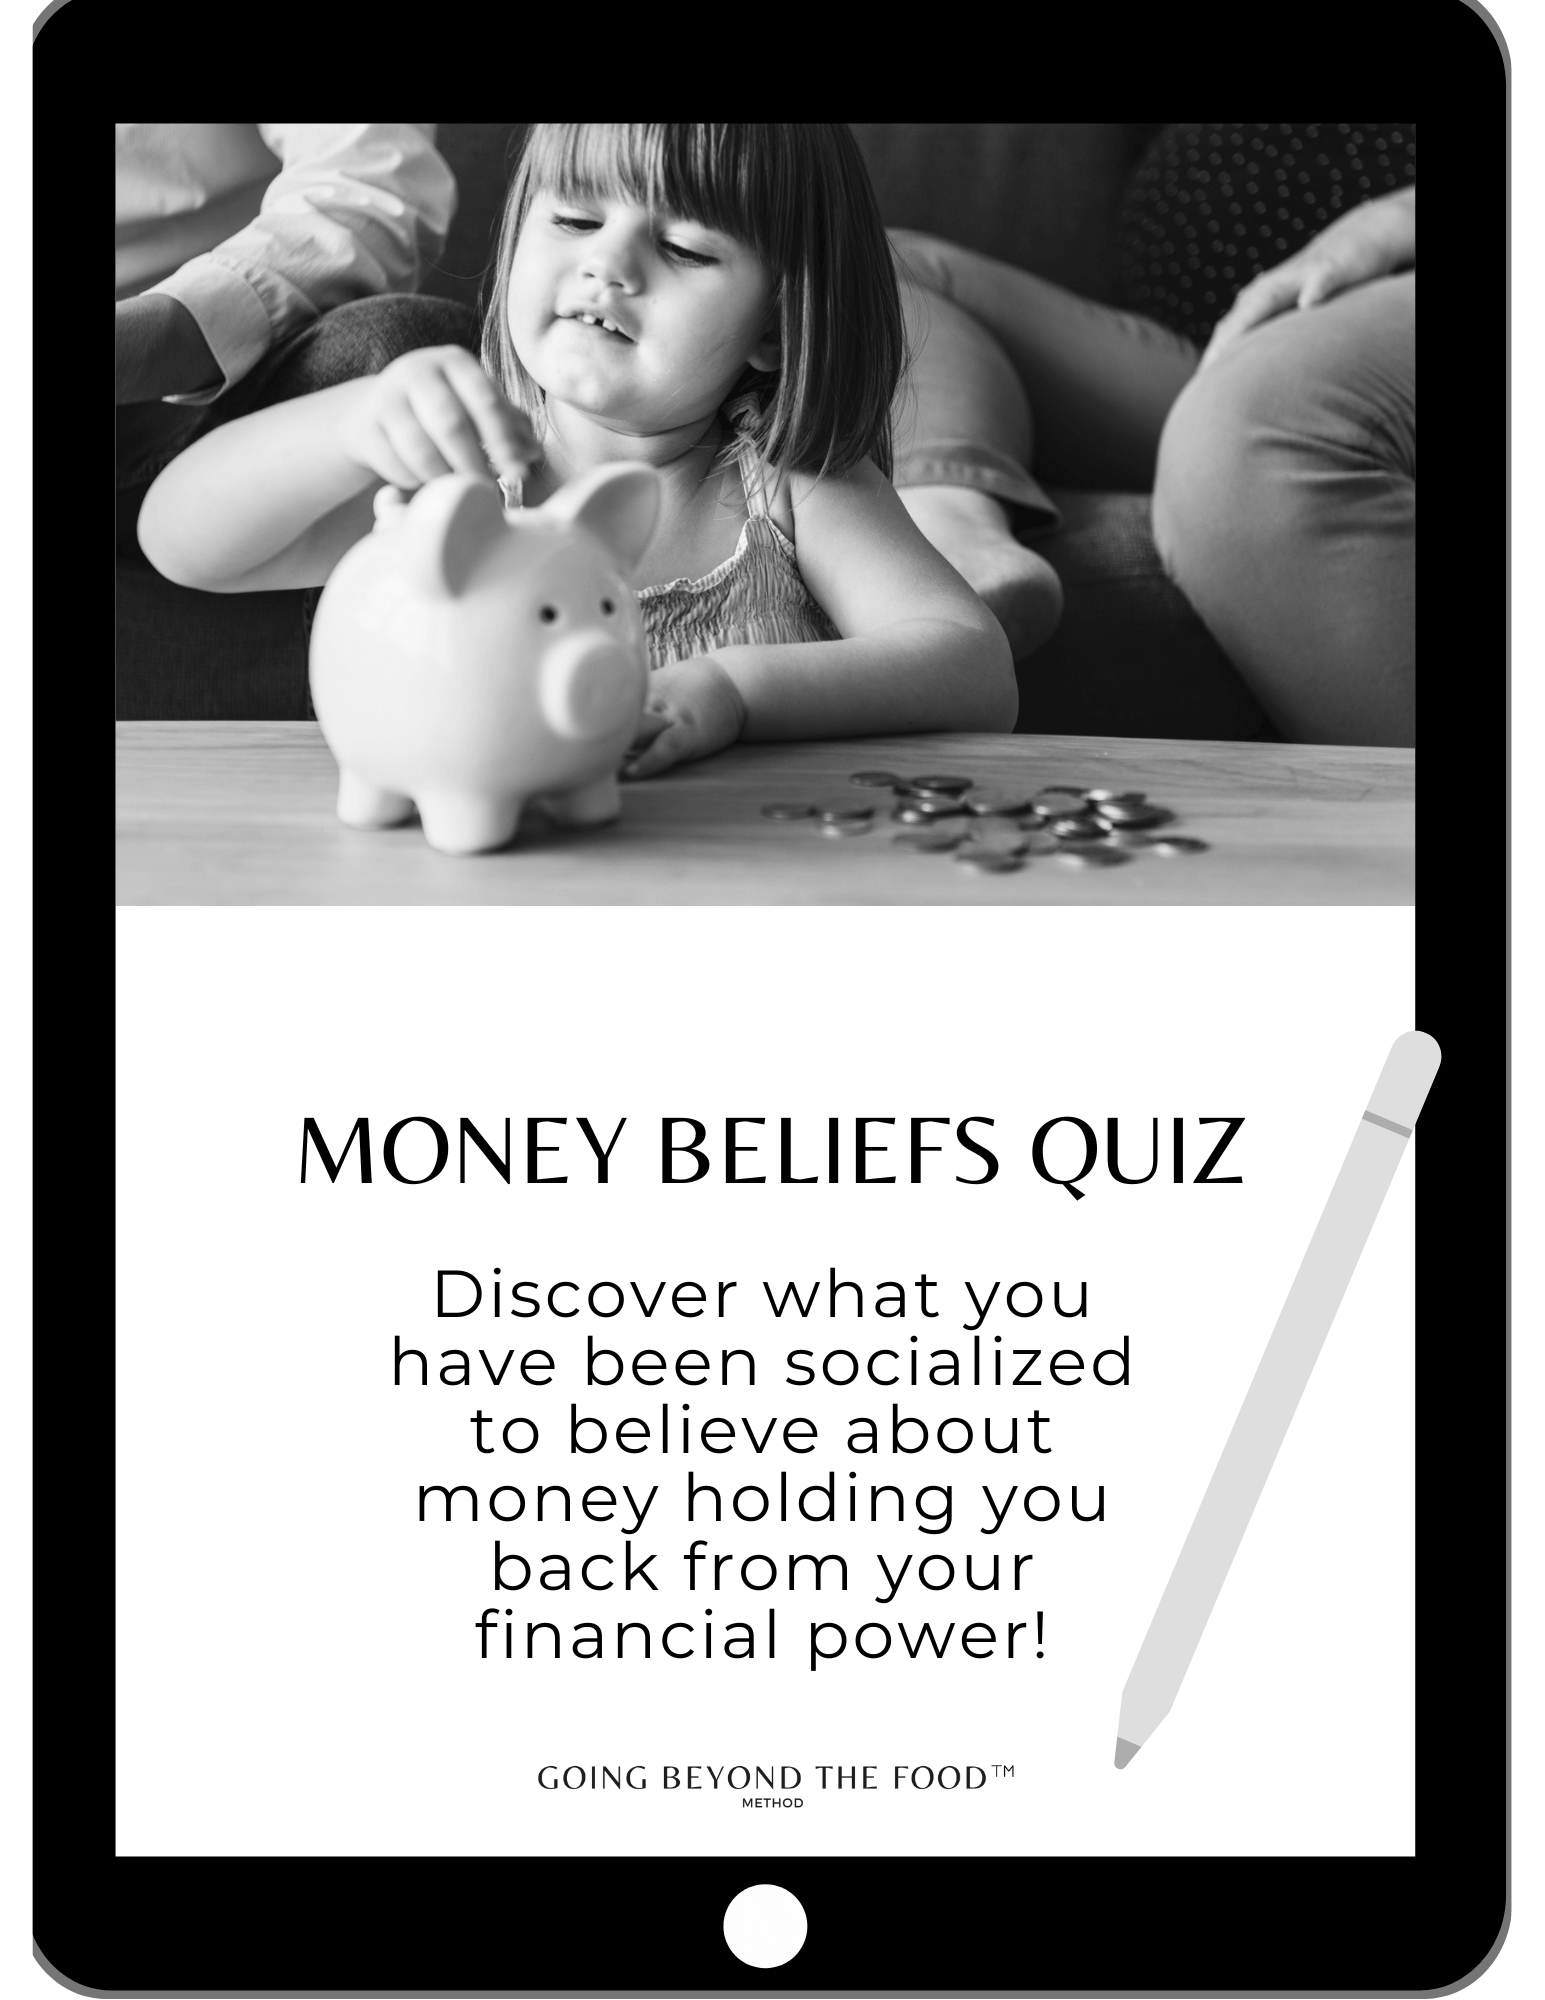 Money beliefs quiz 